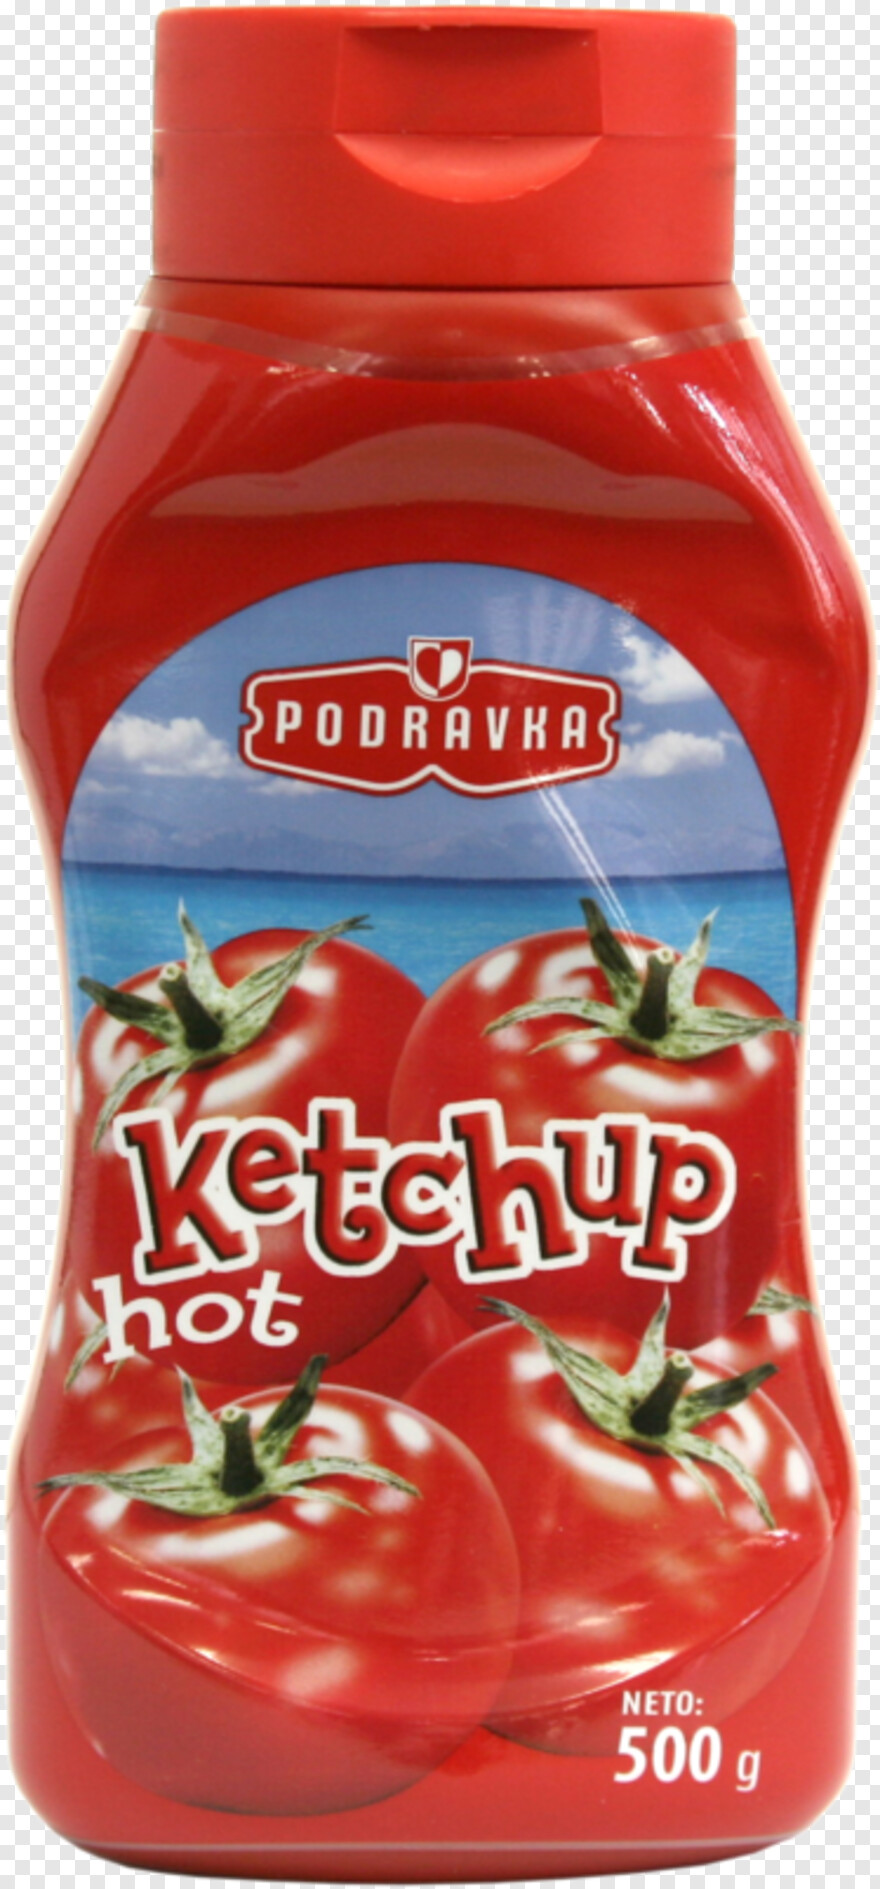 ketchup-bottle # 732739